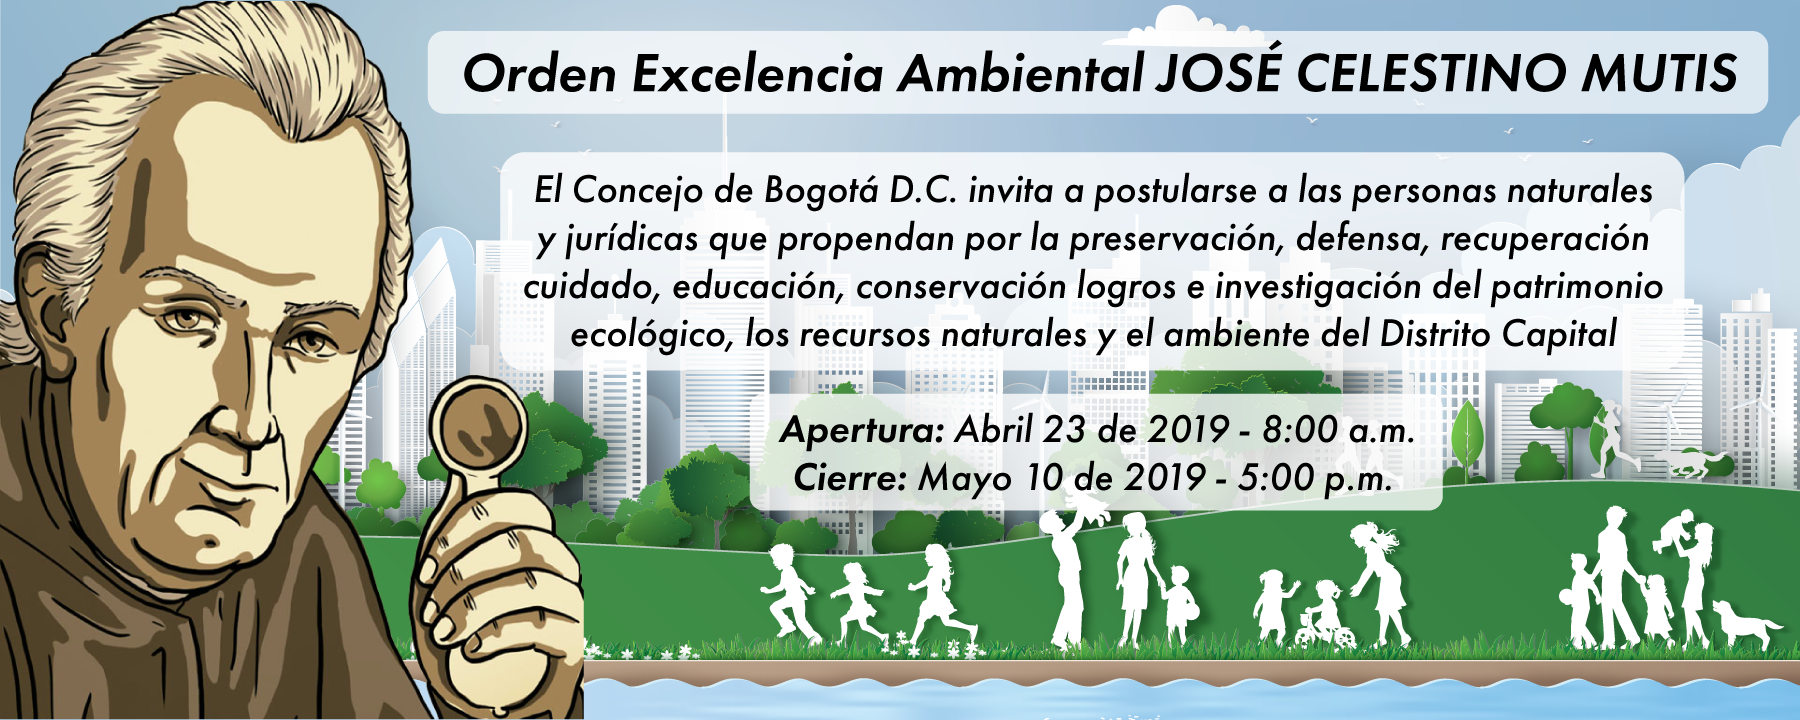 Imagen informativa de la Orden a la Excelencia Ambiental José Celestino Mutis 2019